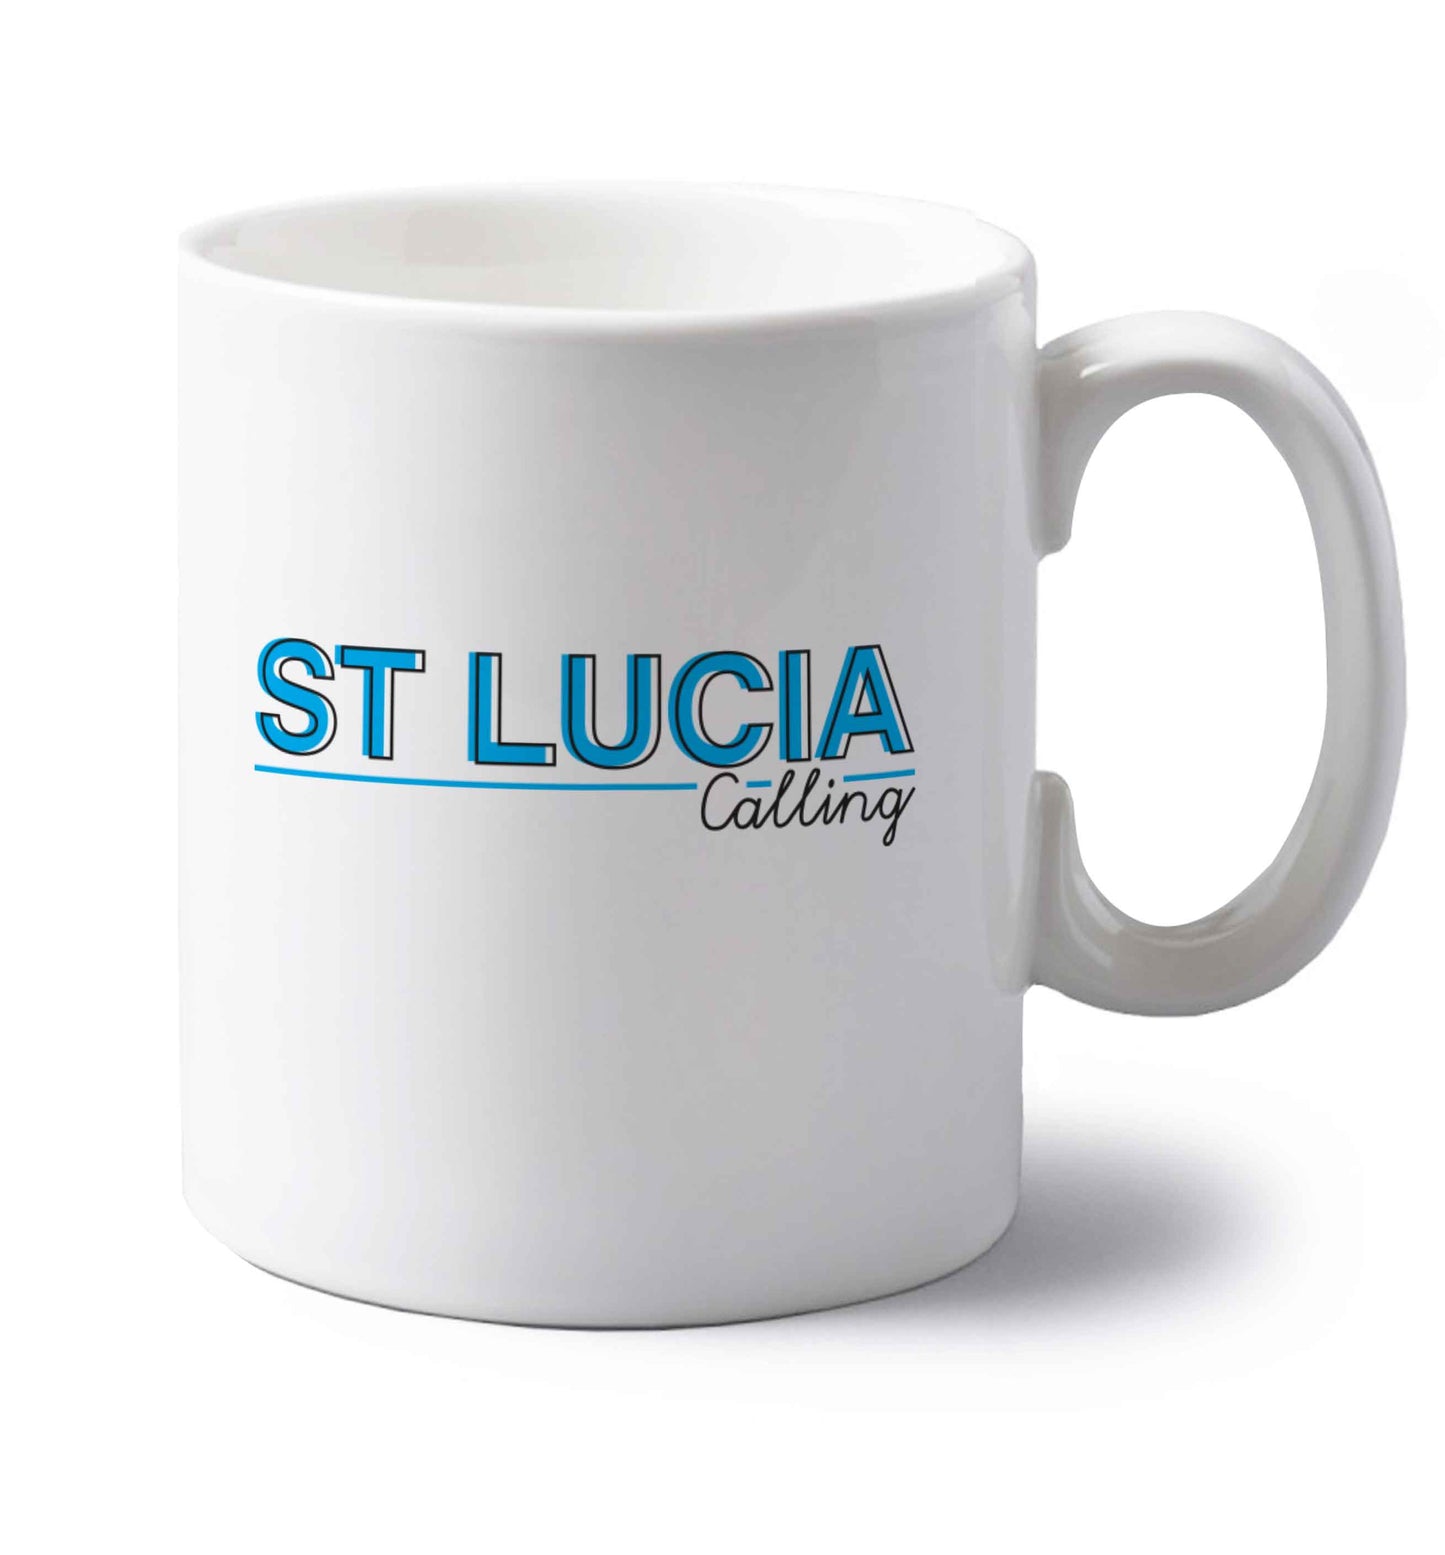 St Lucia calling left handed white ceramic mug 